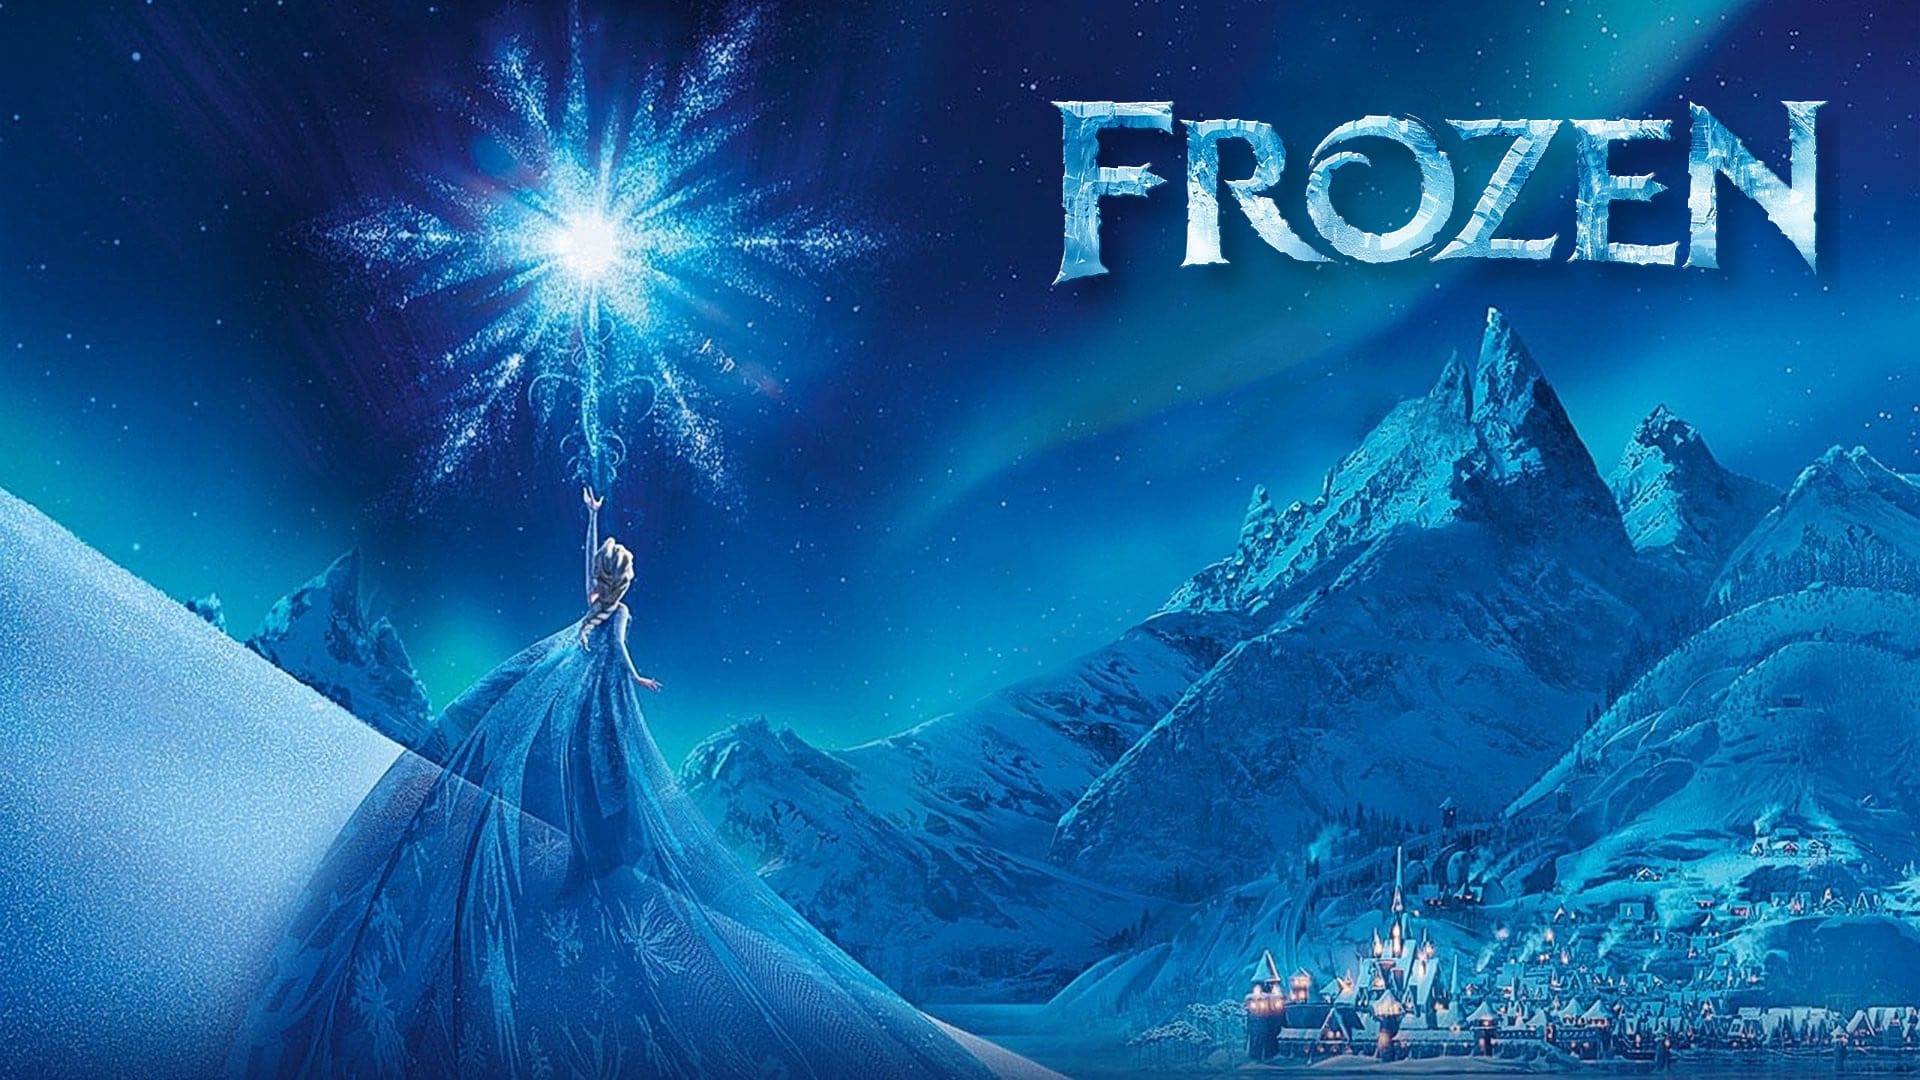 Frozen: Una aventura congelada